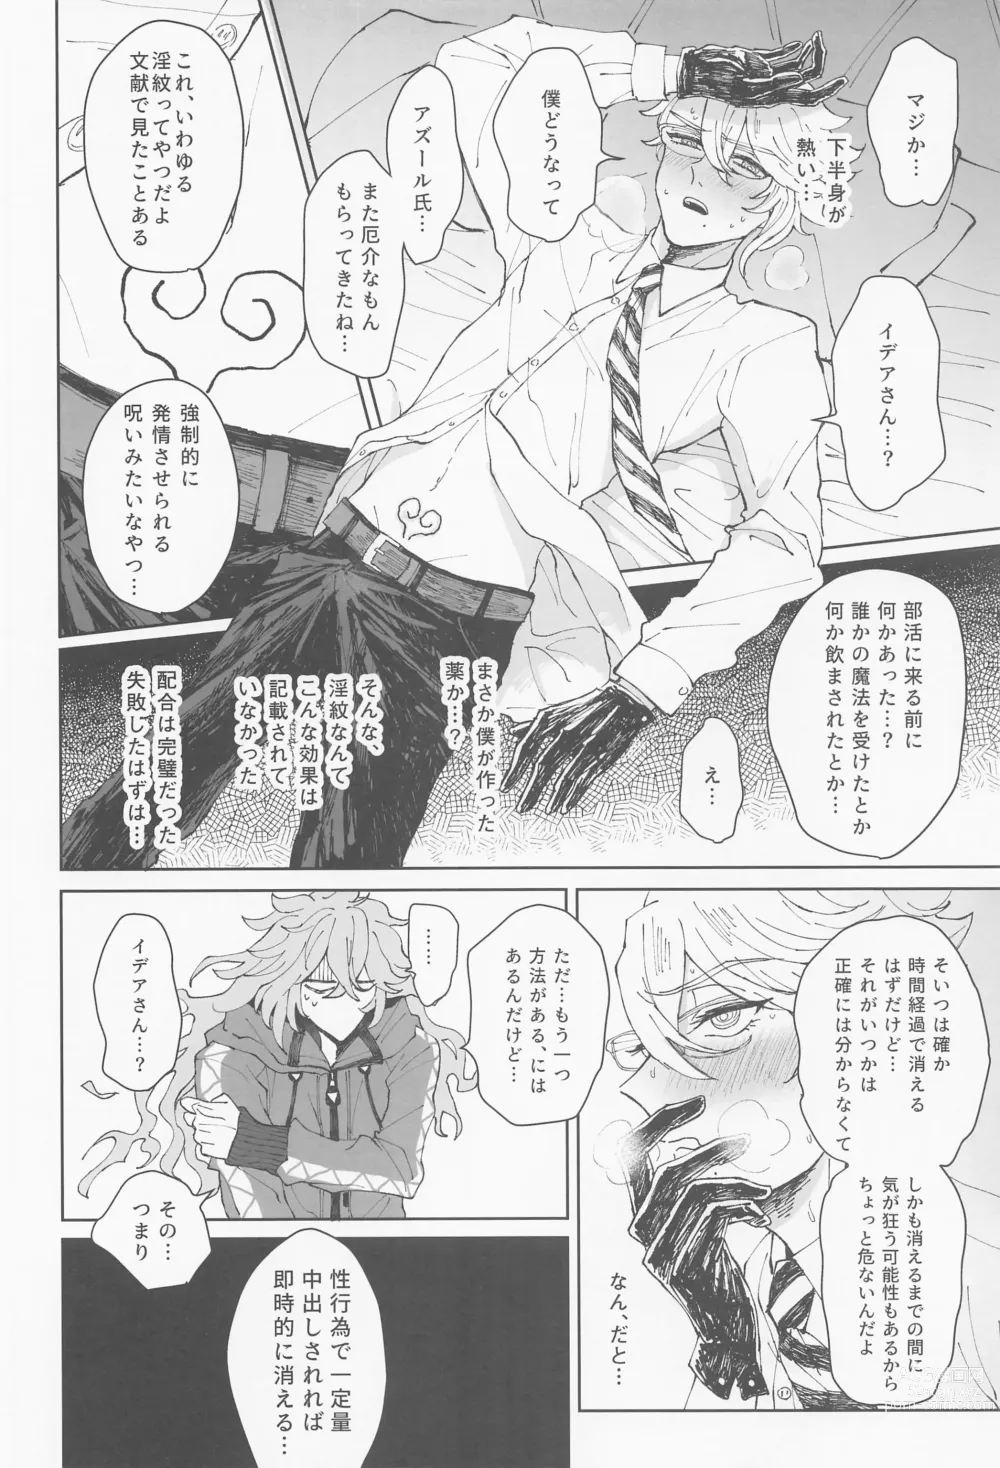 Page 7 of doujinshi Boku wa Zettai Otoshitai!!!